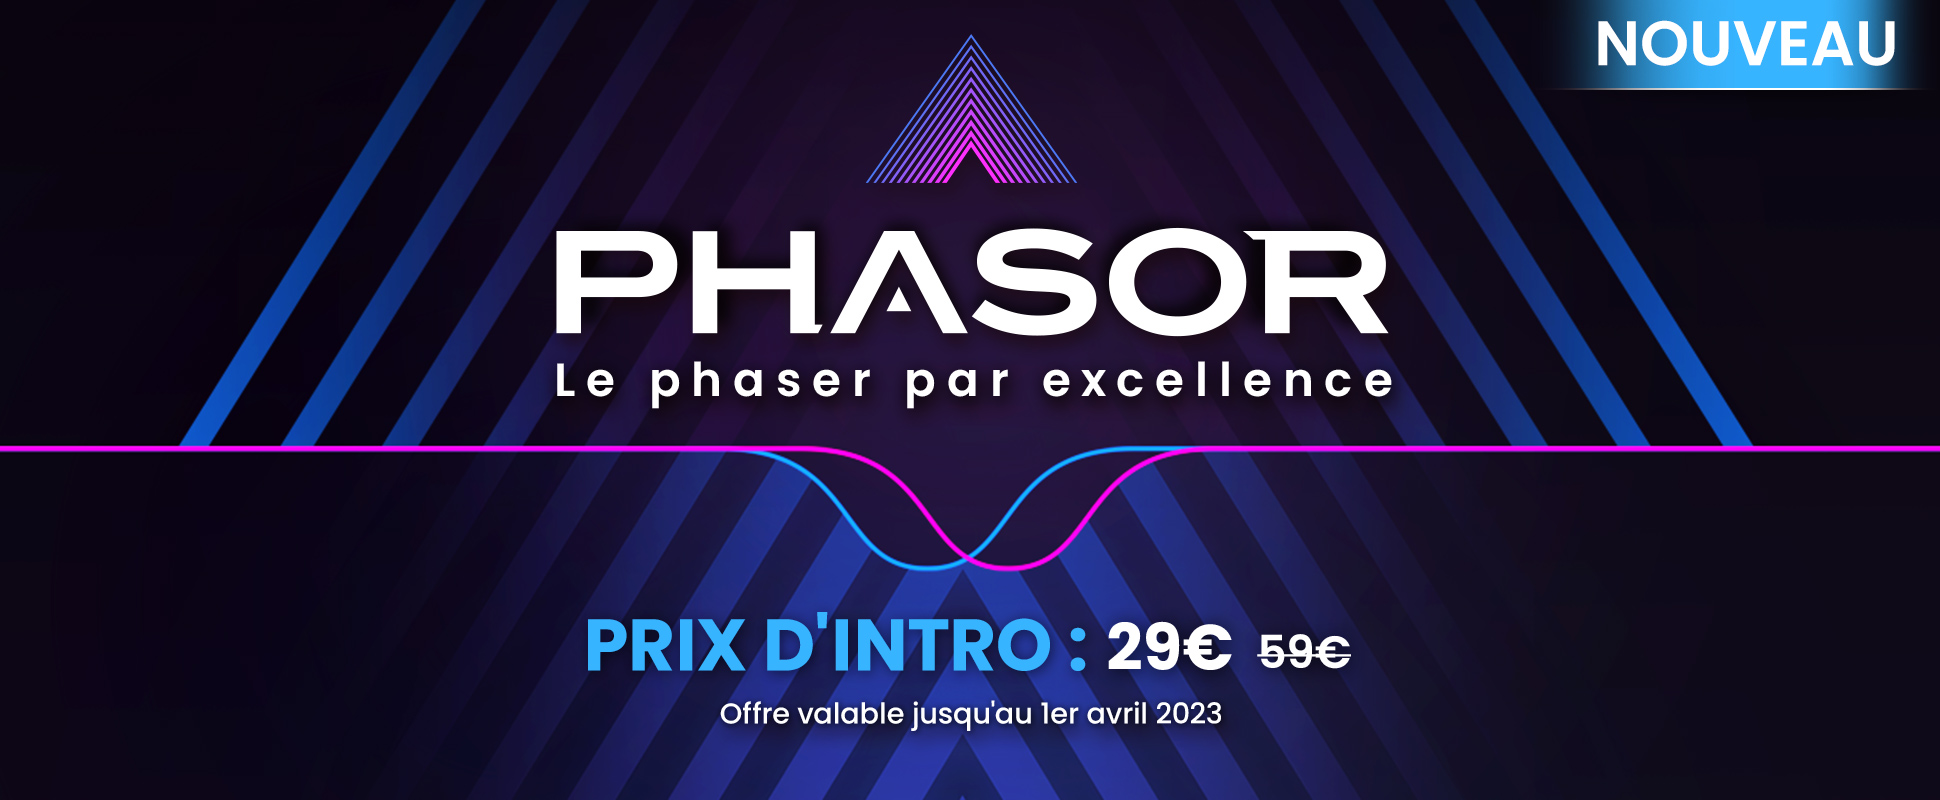 Release - Phasor - Mars 2023